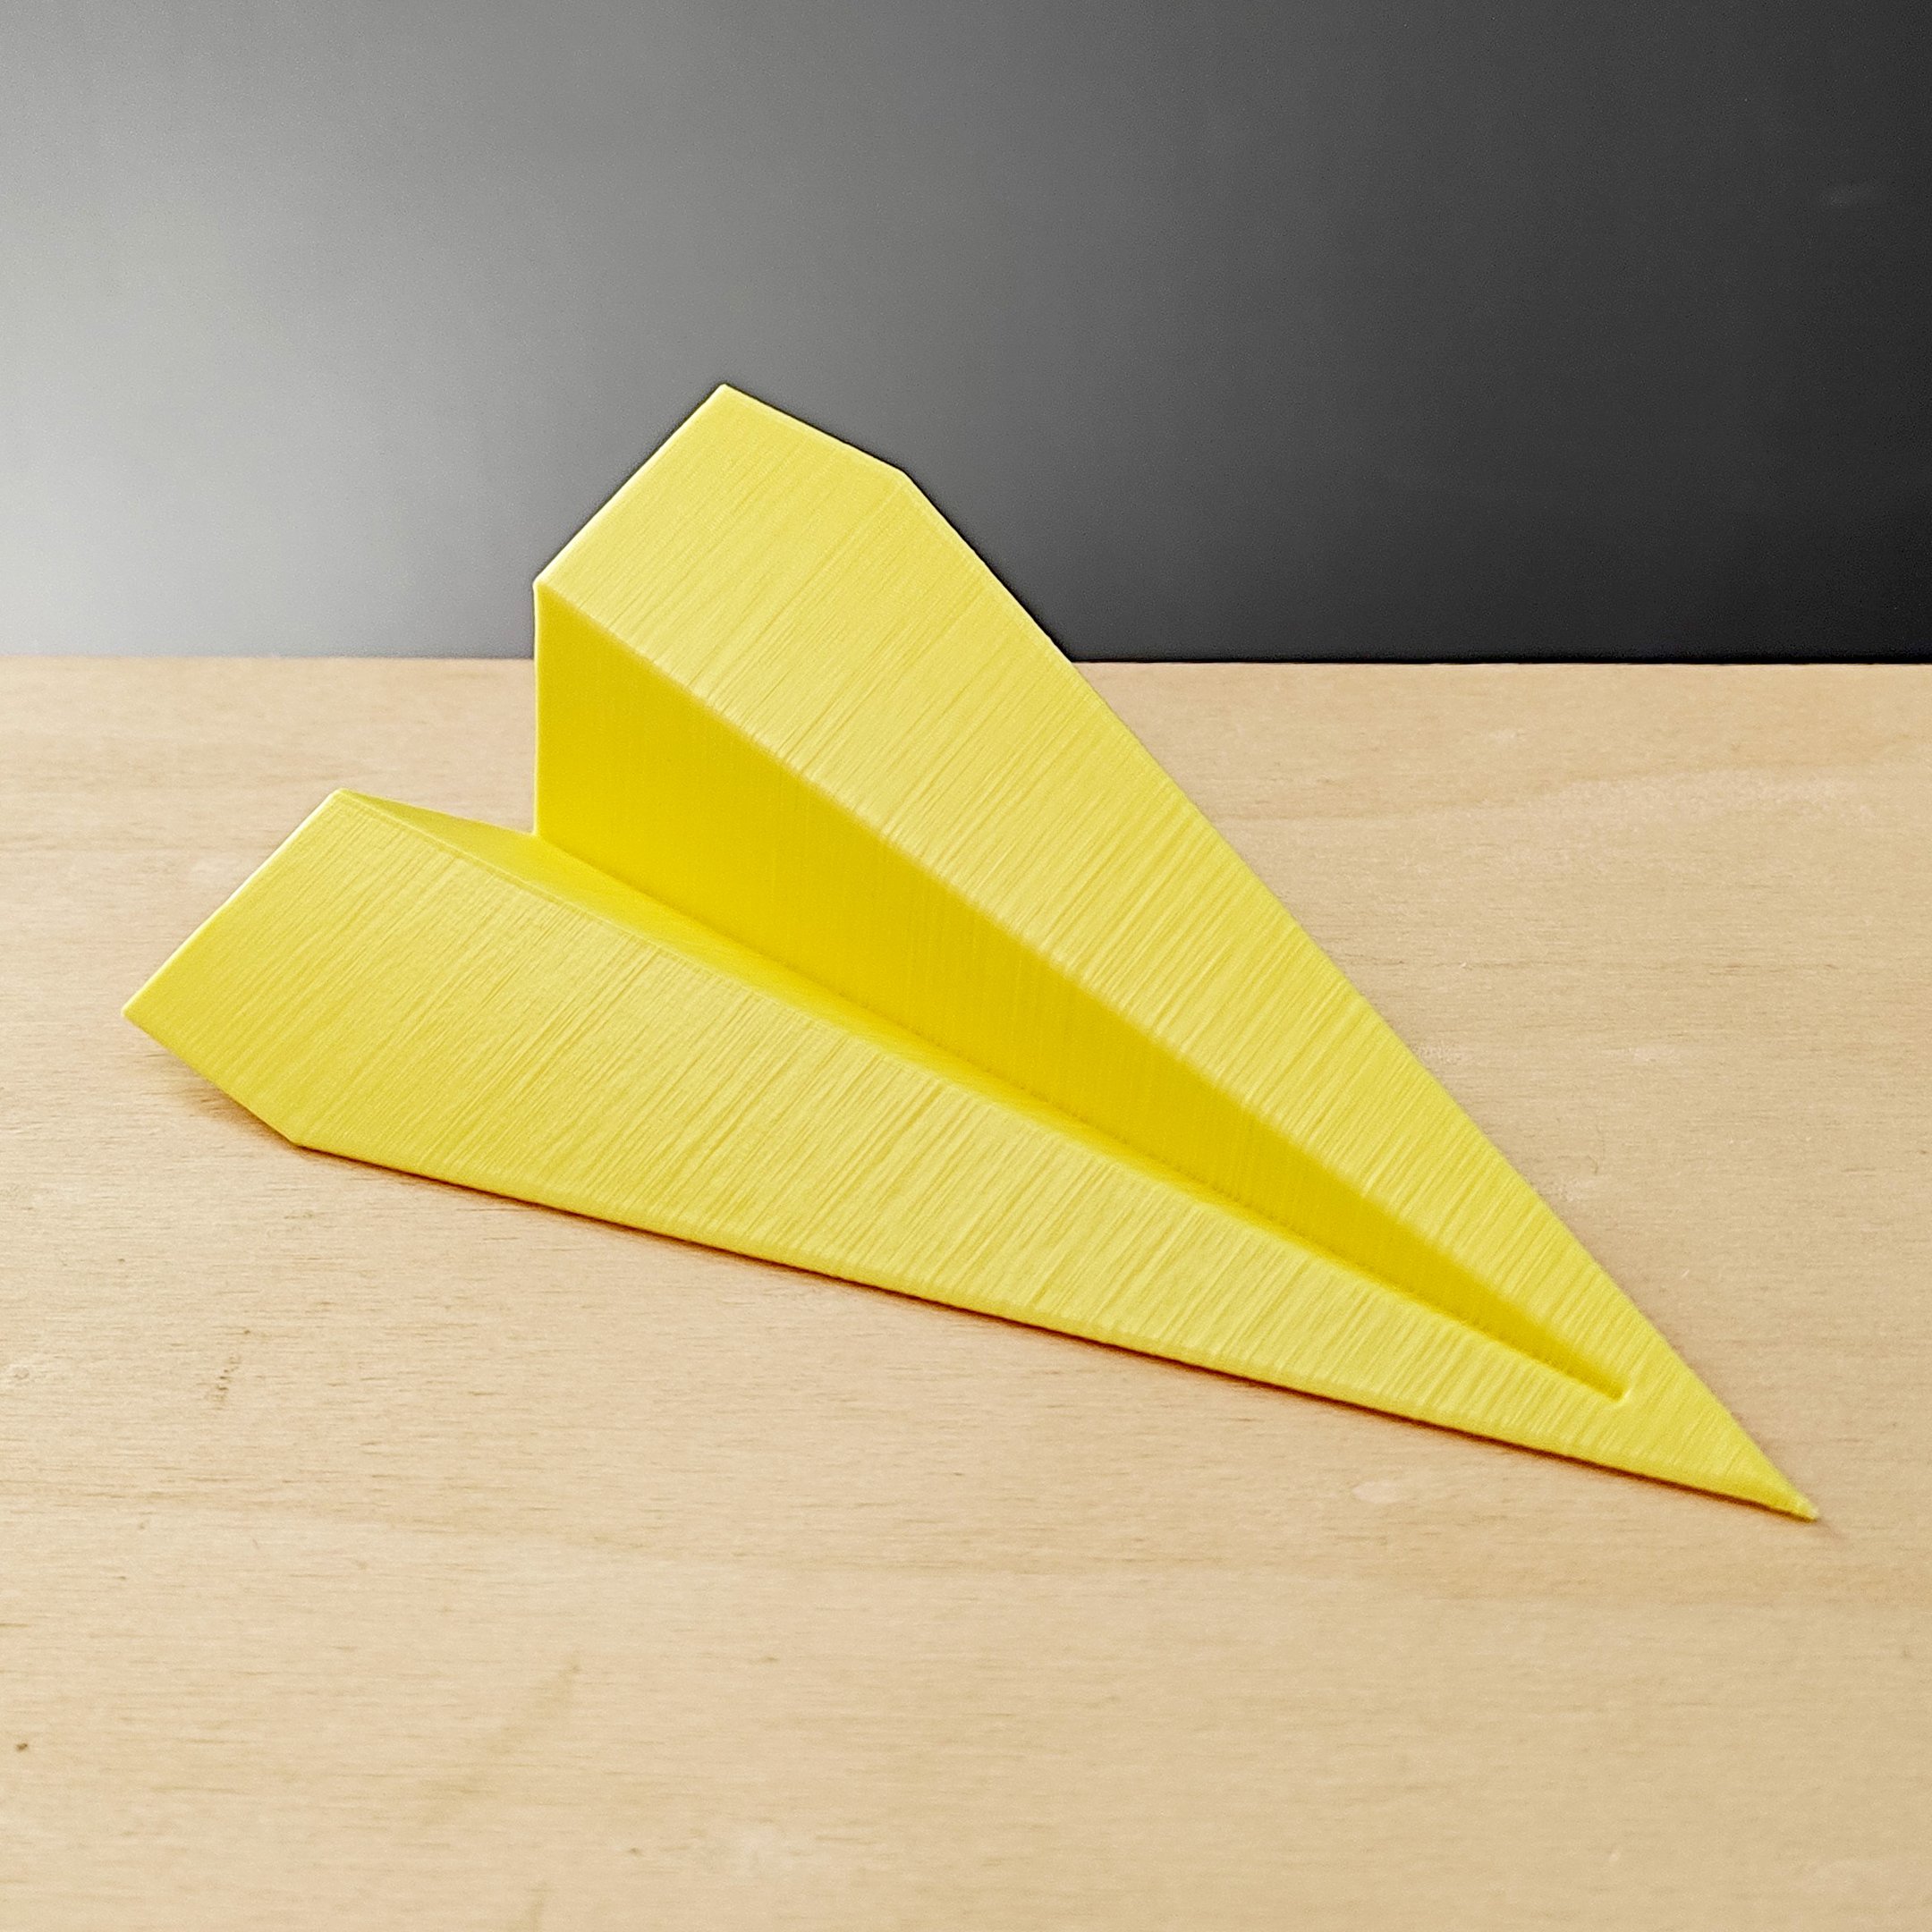 Estatueta Avião Origami P - 13,5cm comp. - Toque 3D:Amarelo